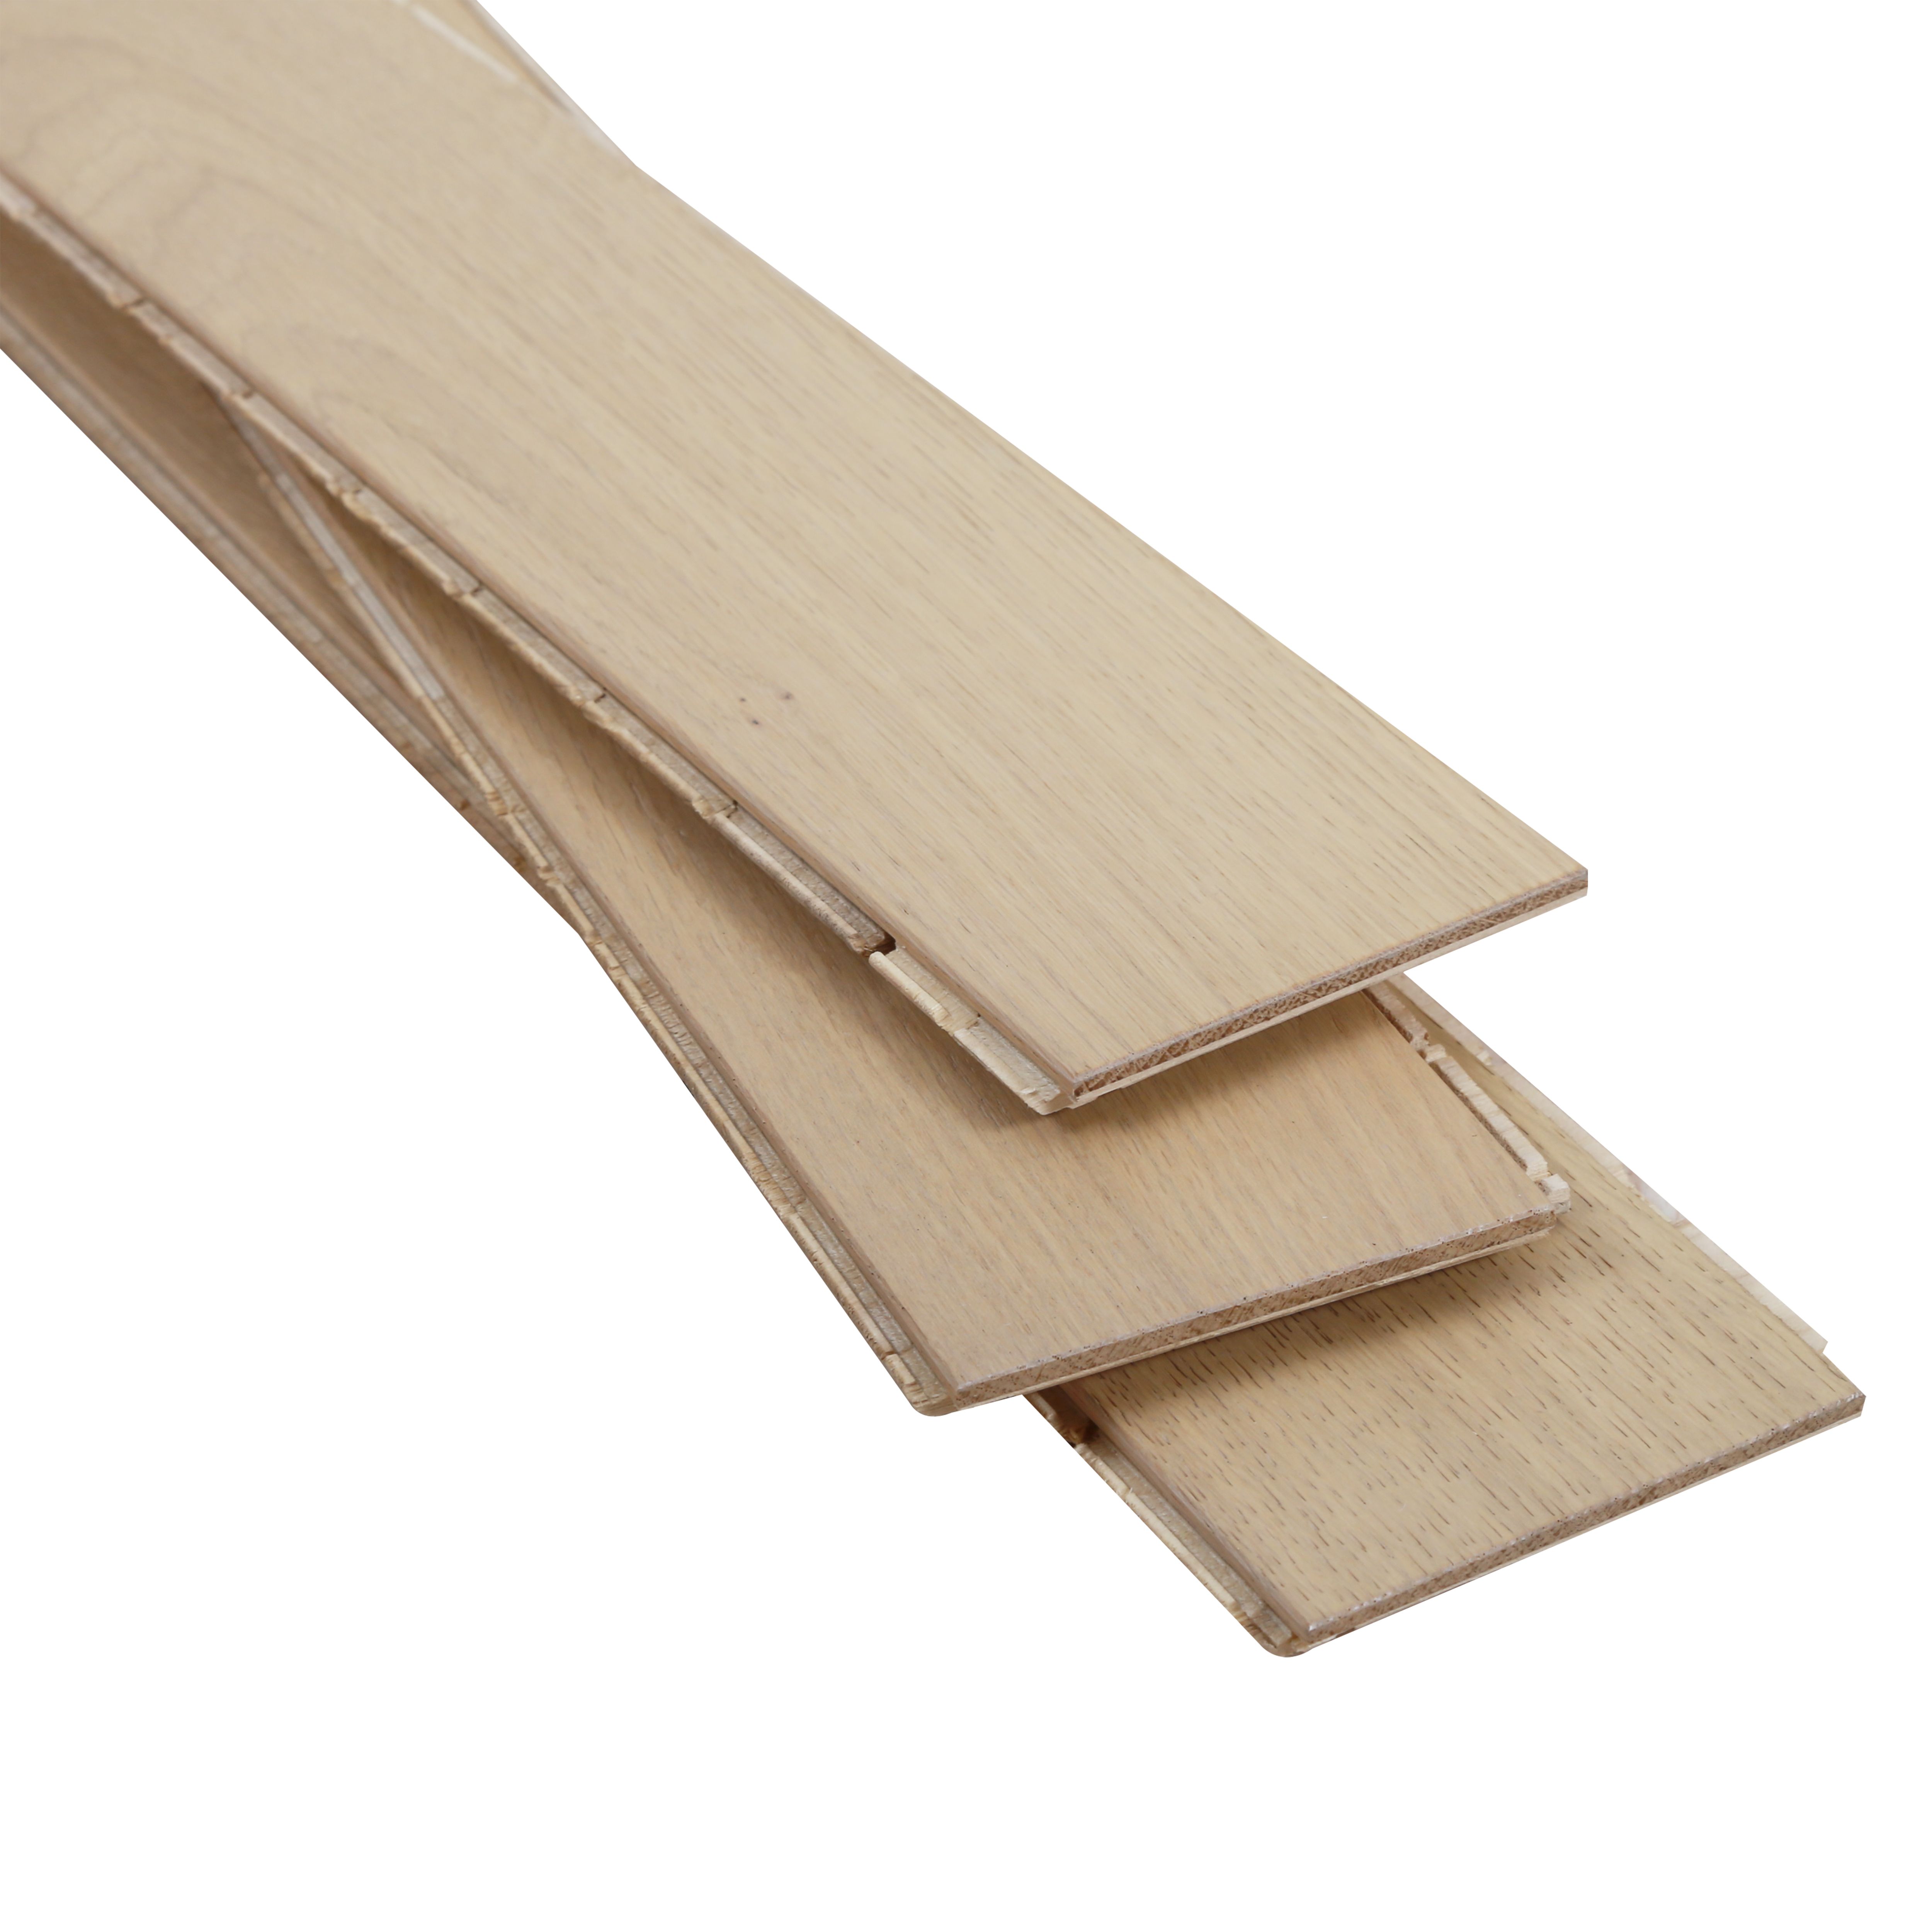 GoodHome Lulea Modern Herringbone Natural Oak Engineered Real wood top layer flooring, 1.94m² Pack of 36